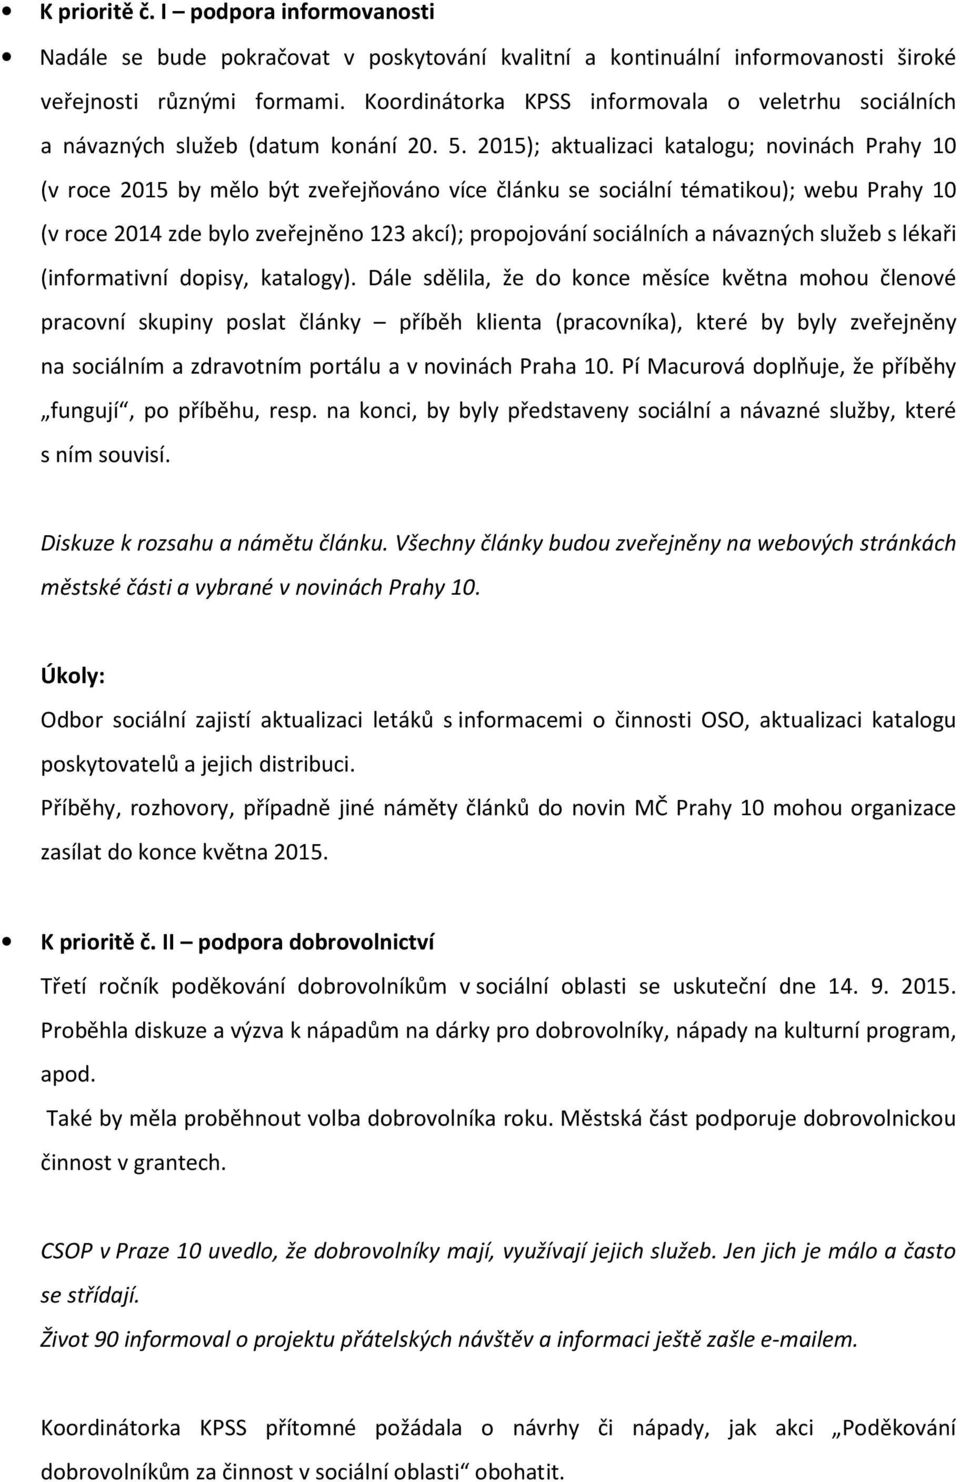 2015); aktualizaci katalogu; novinách Prahy 10 (v roce 2015 by mělo být zveřejňováno více článku se sociální tématikou); webu Prahy 10 (v roce 2014 zde bylo zveřejněno 123 akcí); propojování